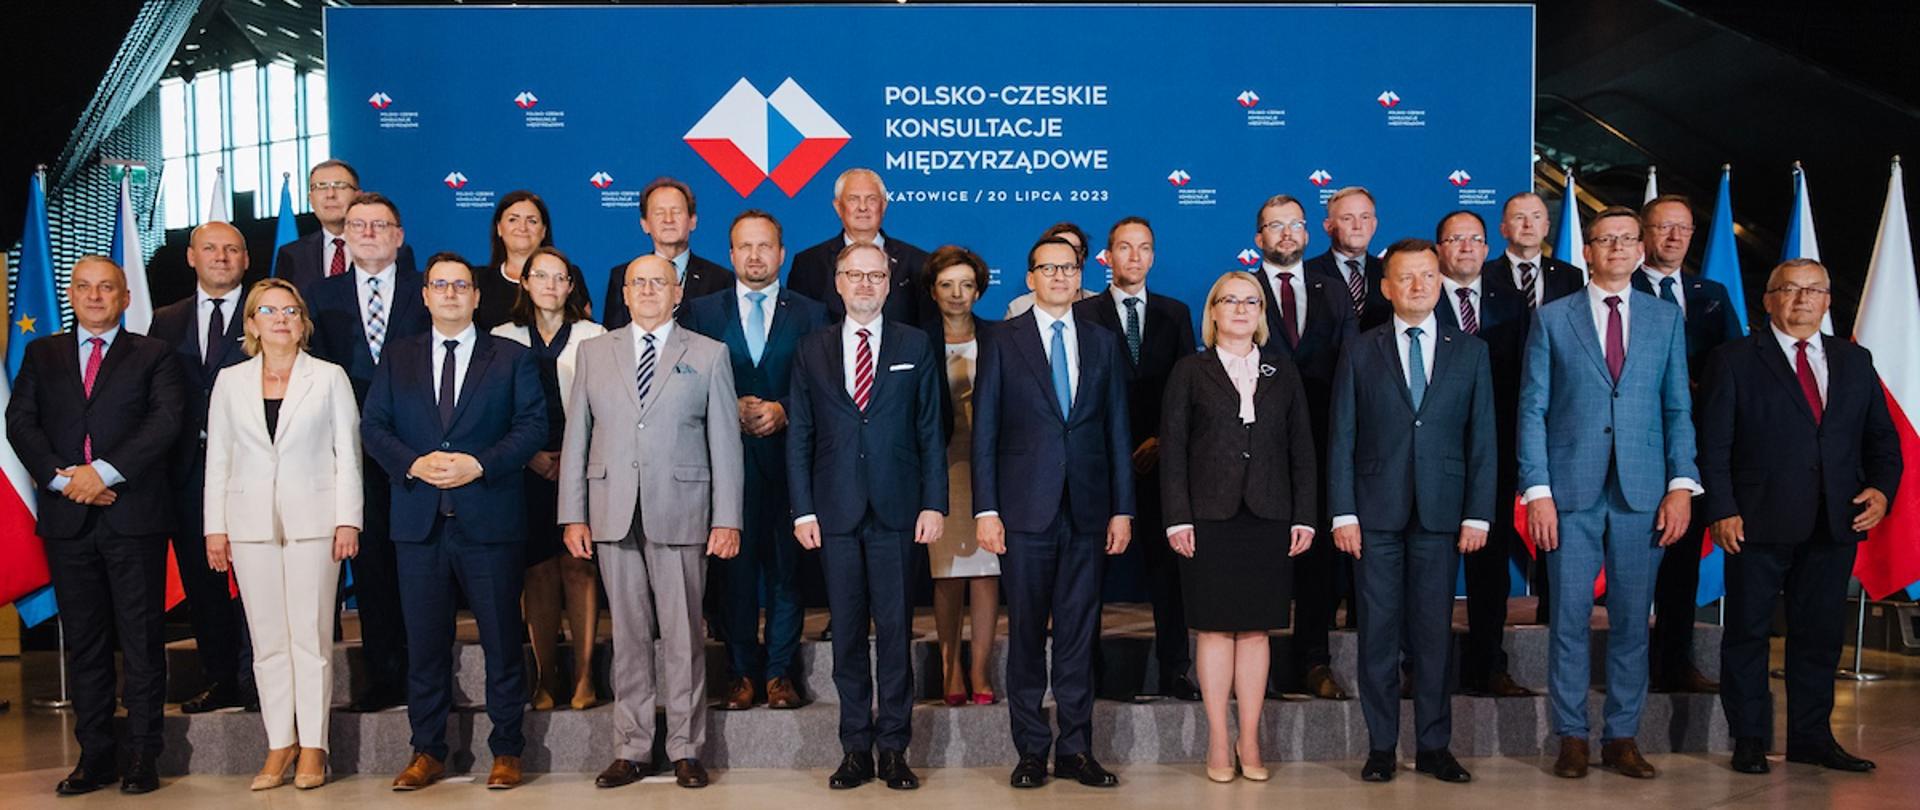 Polsko-czeskie konsultacje międzyrządowe, zdjęcie grupowe